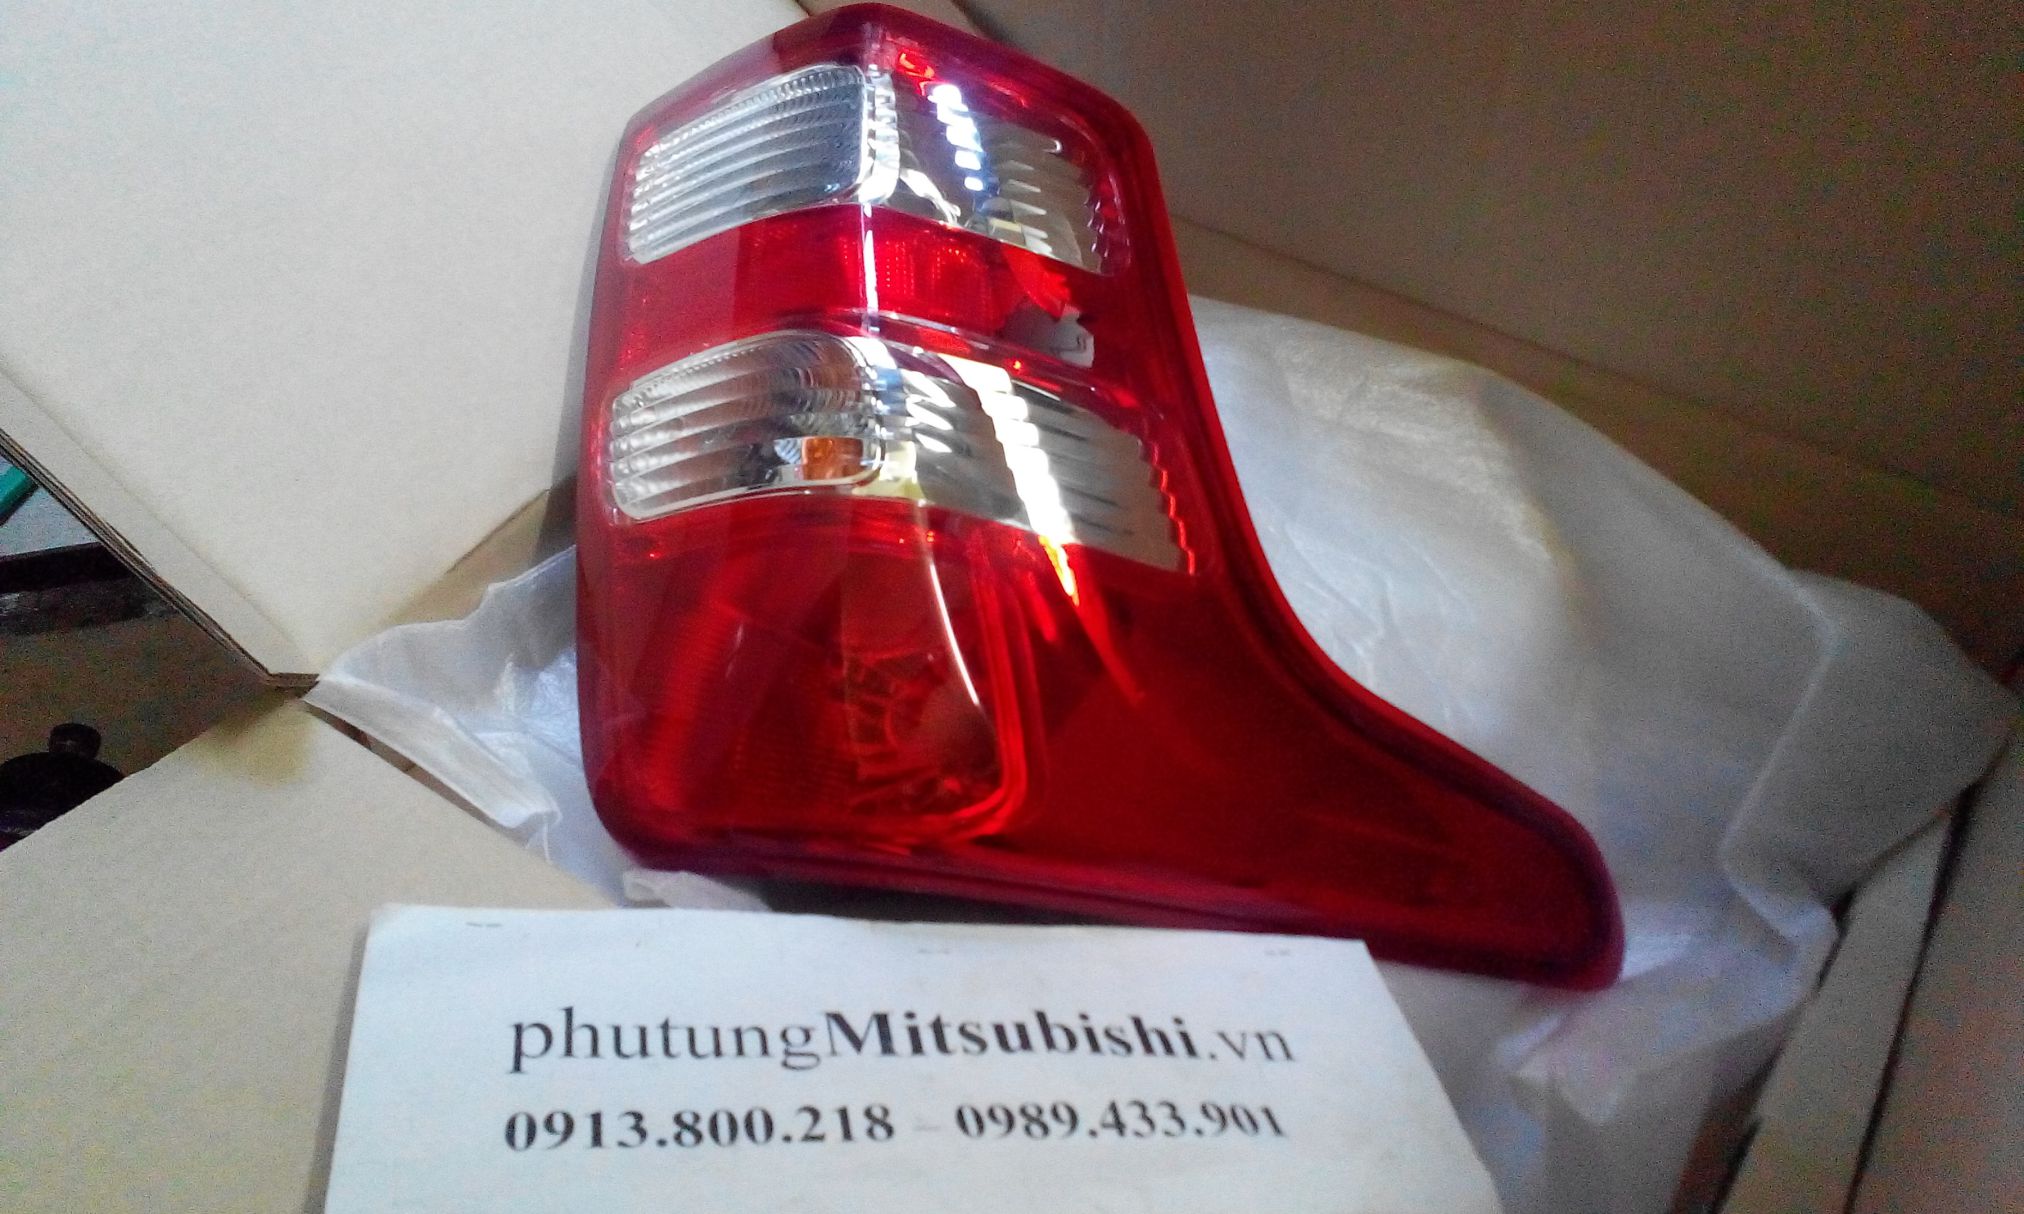 Đèn hậu xe Mitsubishi Triton